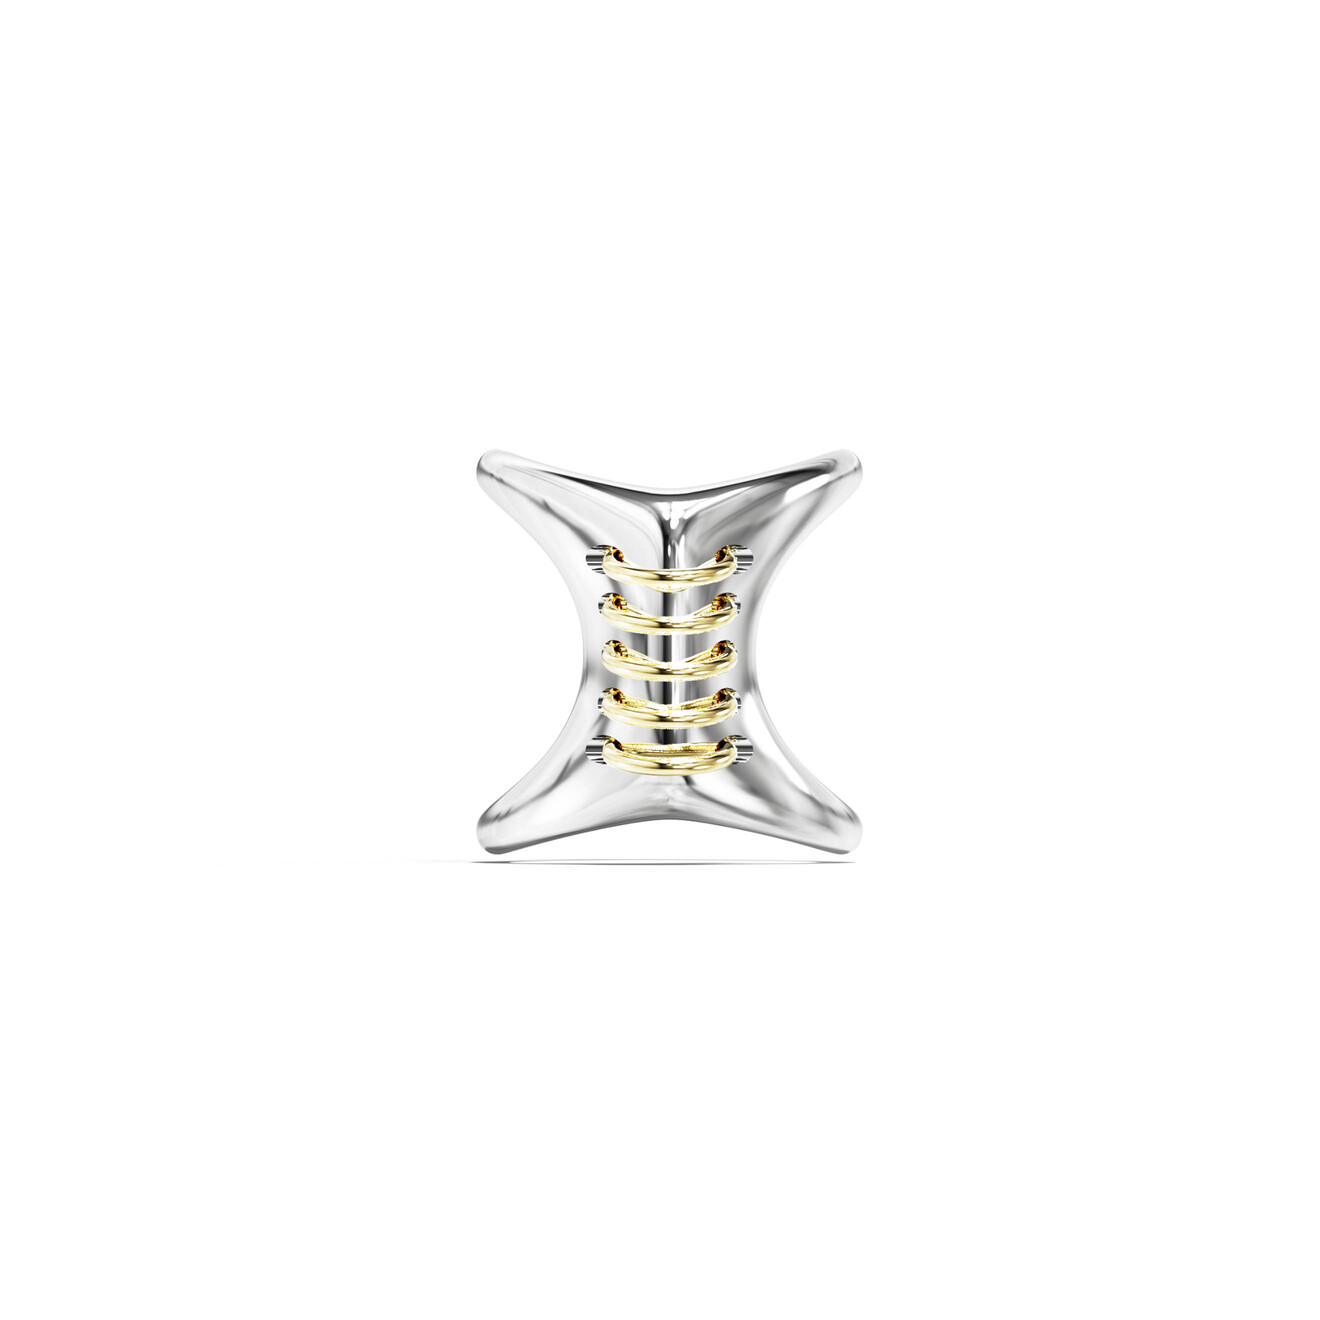 tilda двойное биколорное кольцо нимб из серебра с позолотой Jewlia Биколорное кольцо-корсет из серебра